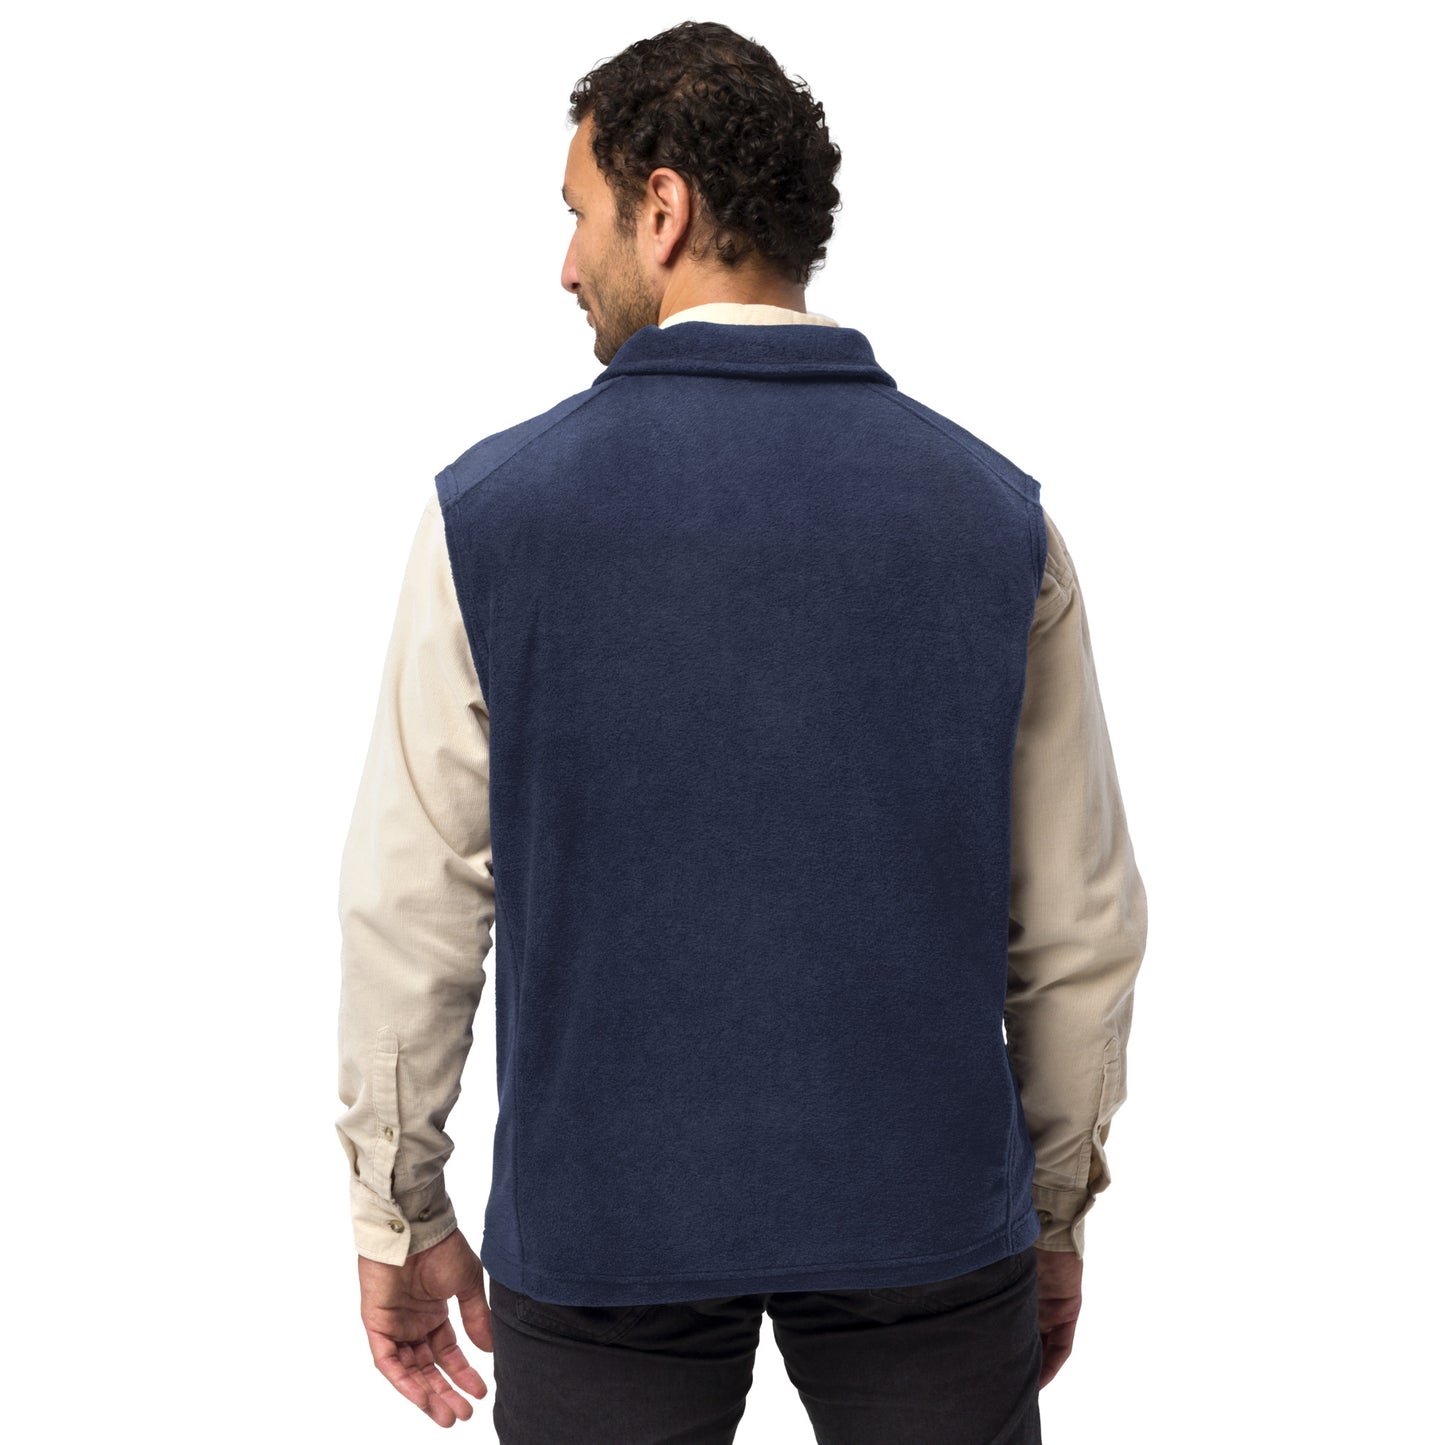 City Life Men’s Columbia Fleece Vest